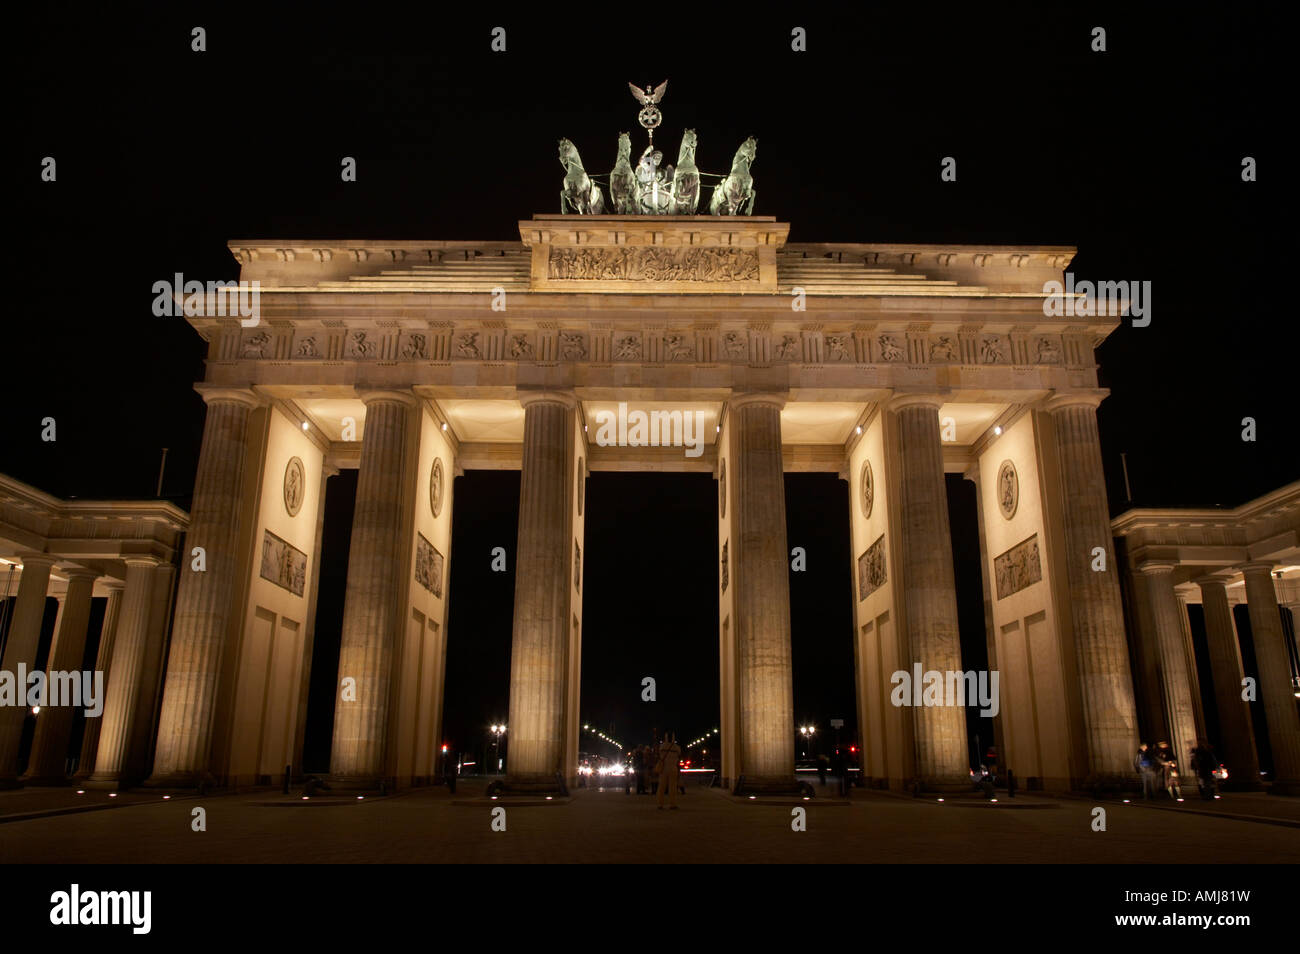 La porte de Brandebourg à Berlin Allemagne nuit Banque D'Images